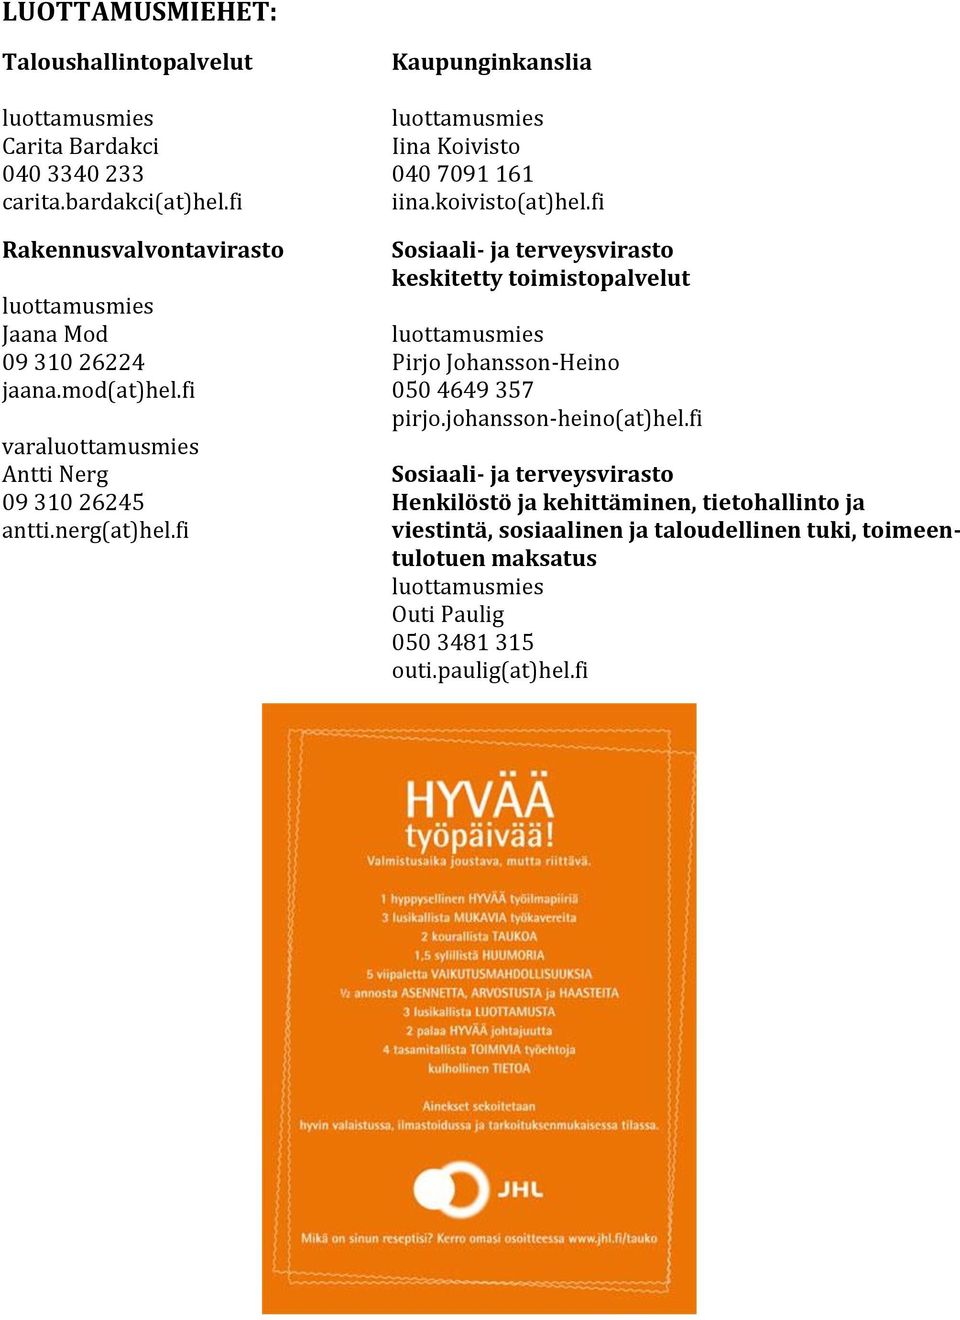 fi Rakennusvalvontavirasto Sosiaali- ja terveysvirasto keskitetty toimistopalvelut luottamusmies Jaana Mod luottamusmies 09 310 26224 Pirjo Johansson-Heino jaana.